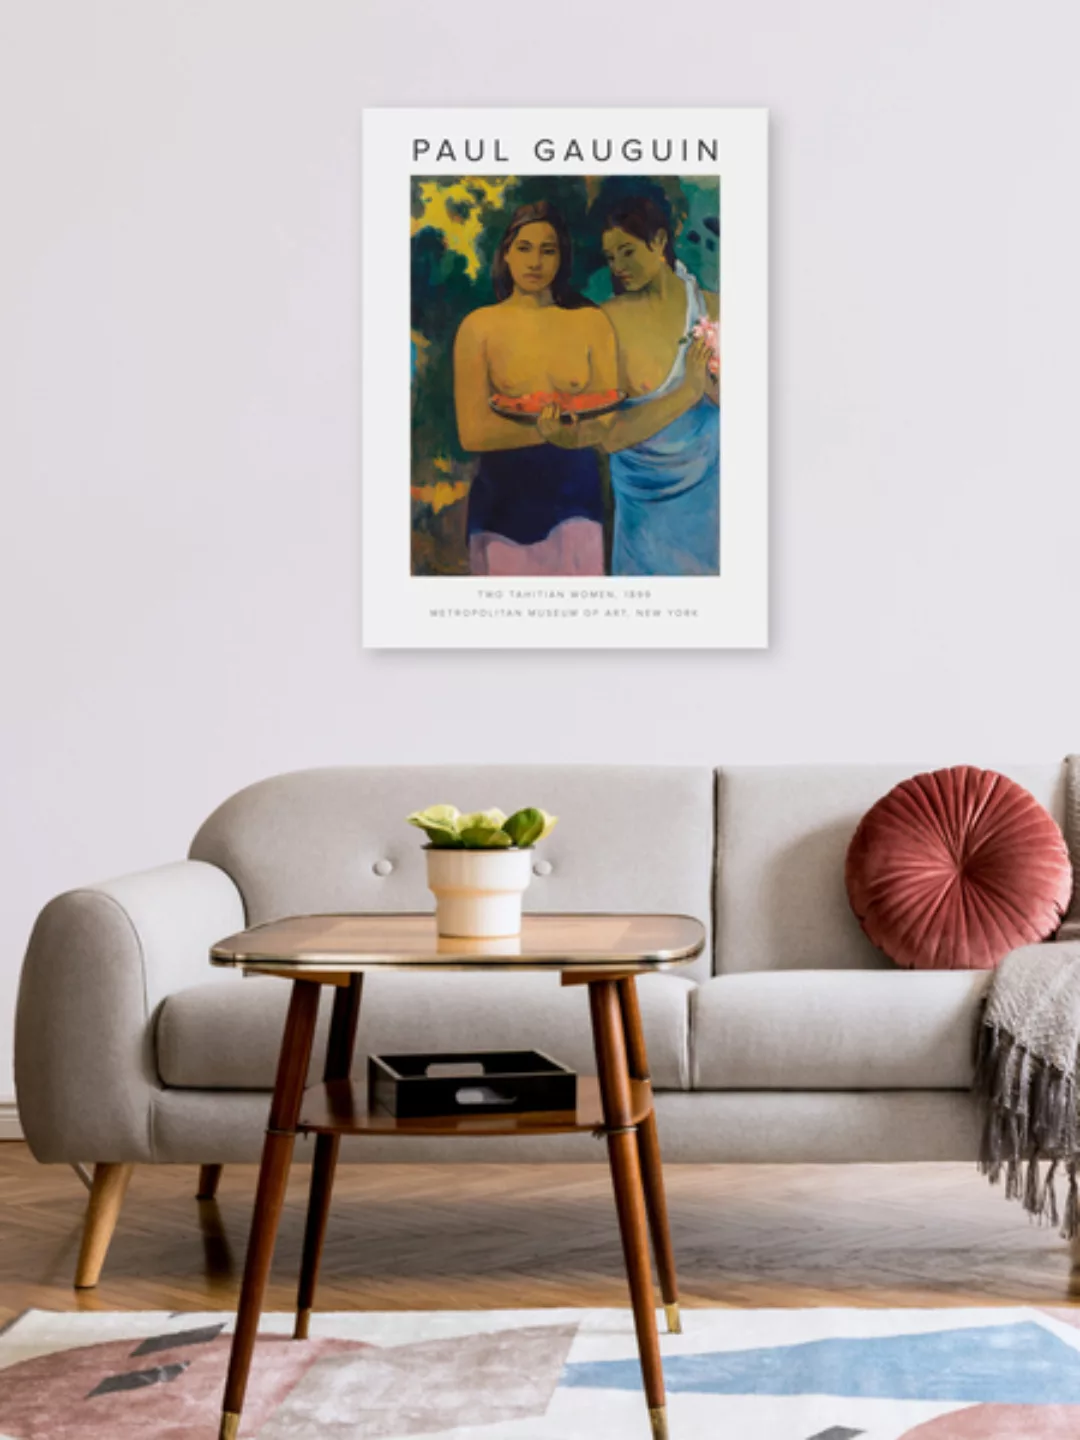 Poster / Leinwandbild - Ausstellungsposter: Two Tahitian Women Von Paul Gau günstig online kaufen